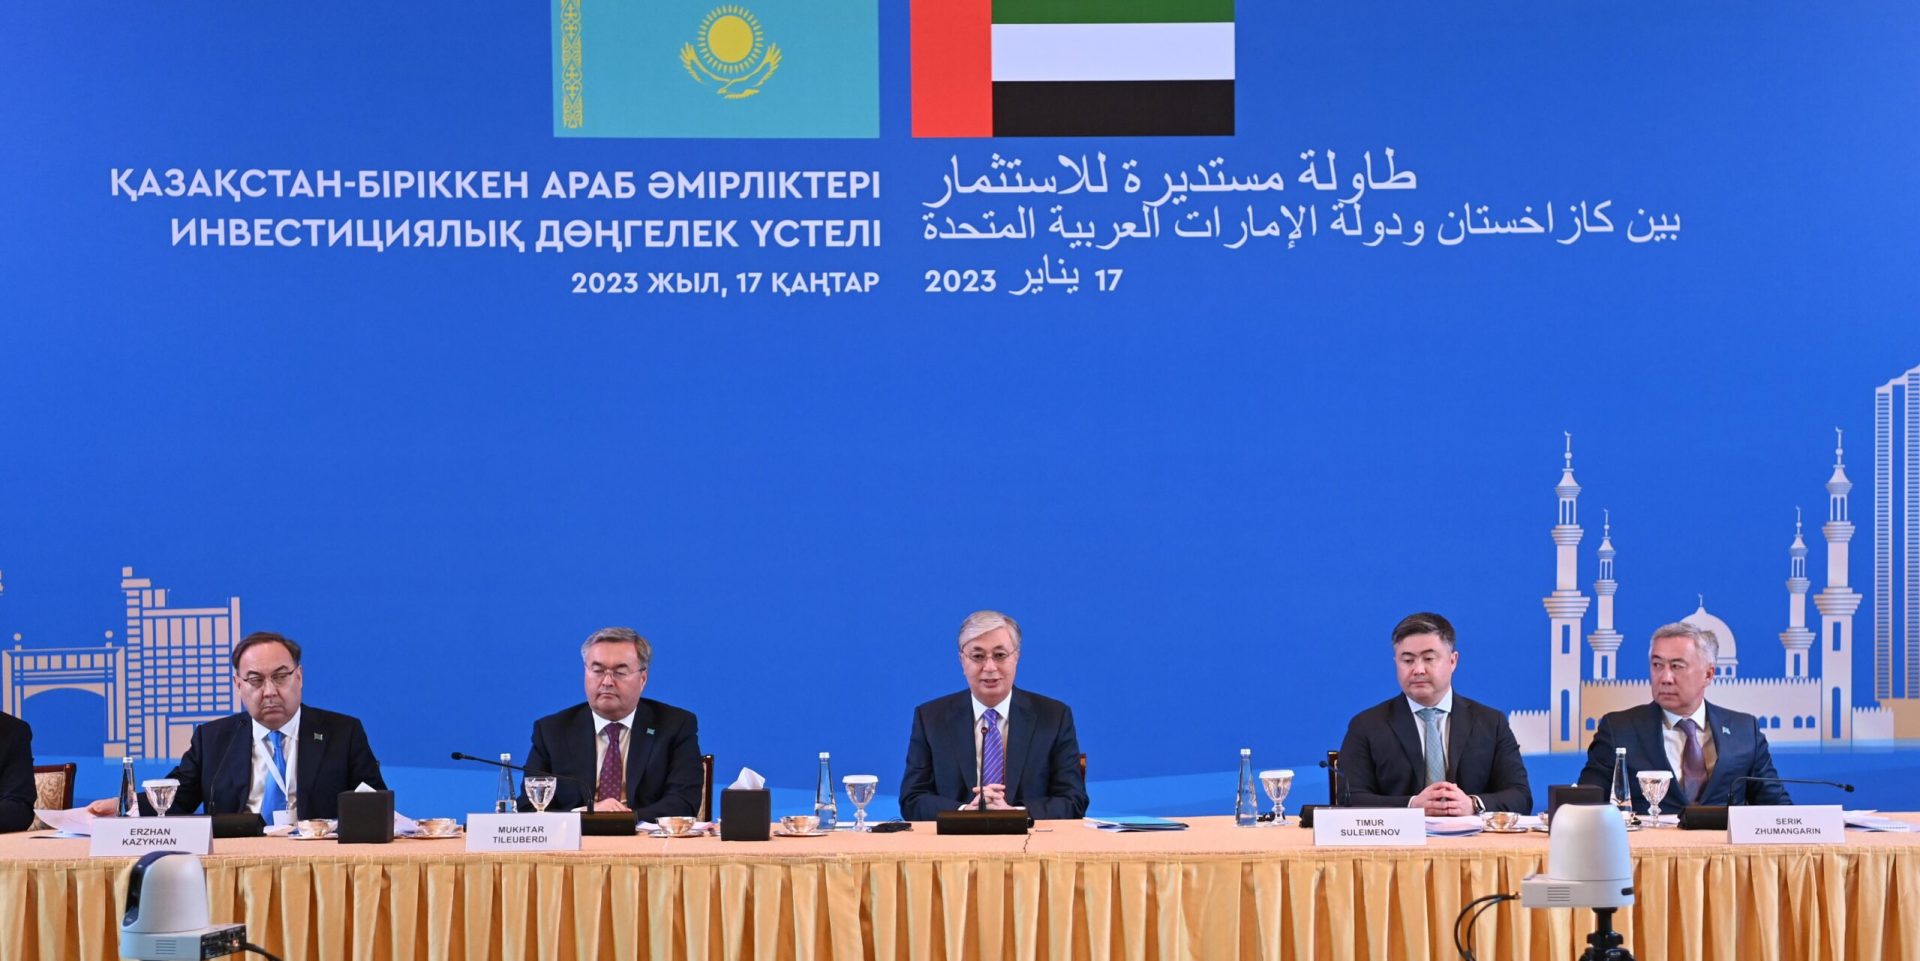 Токаев обозначил перспективные направления сотрудничества на казахстанско-эмиратском инвестиционном круглом столе